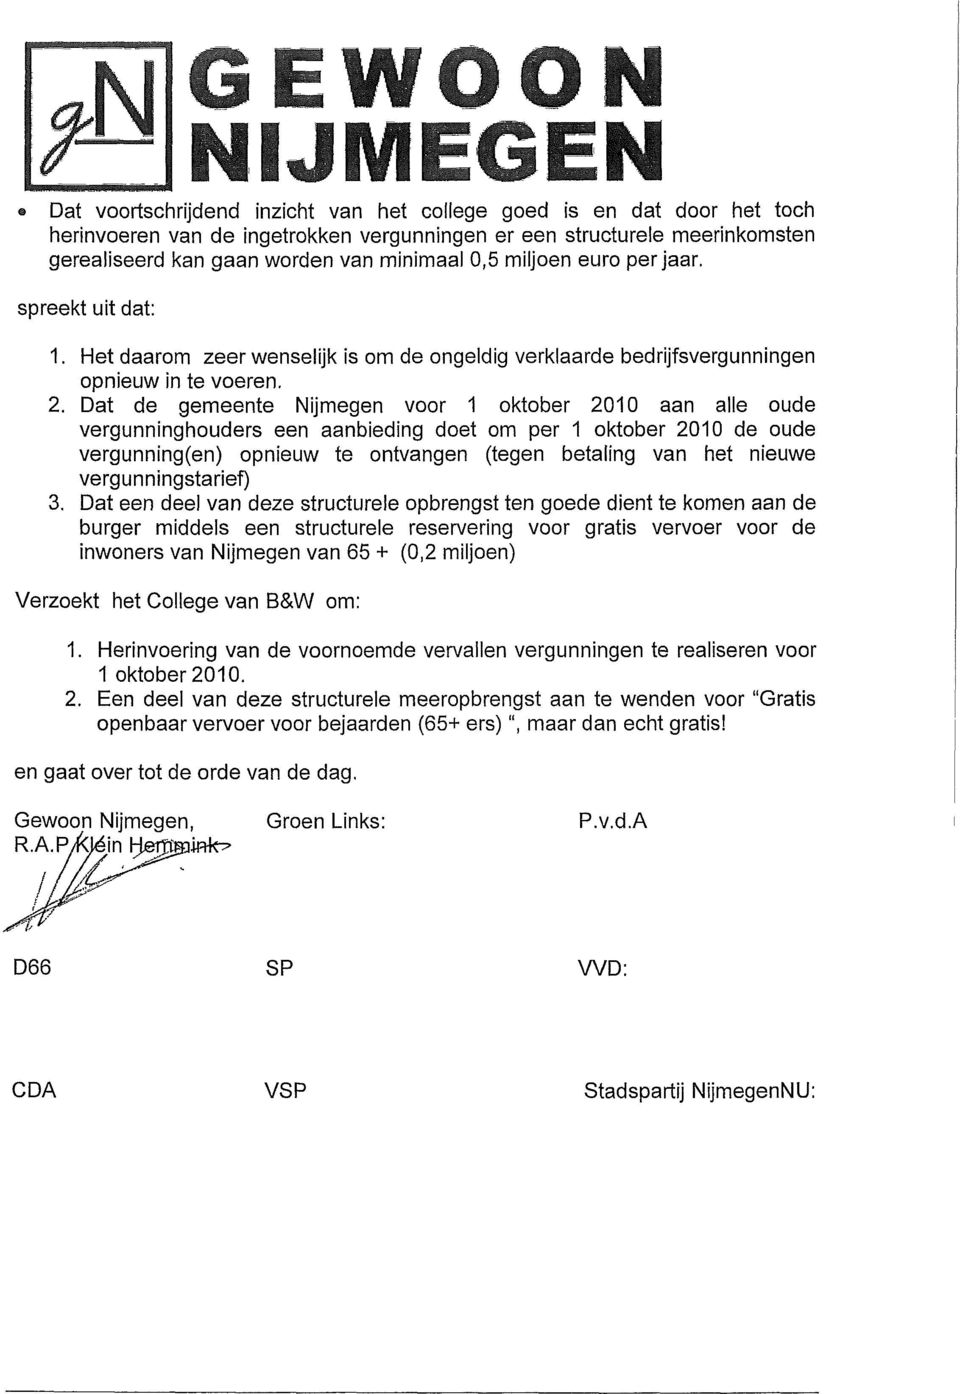 Dat de gemeente Nijmegen voor 1 oktober 2010 aan alle oude vergunninghouders een aanbieding doet om per 1 oktober 2010 de oude vergunning(en) opnieuw te ontvangen (tegen betaling van het nieuwe